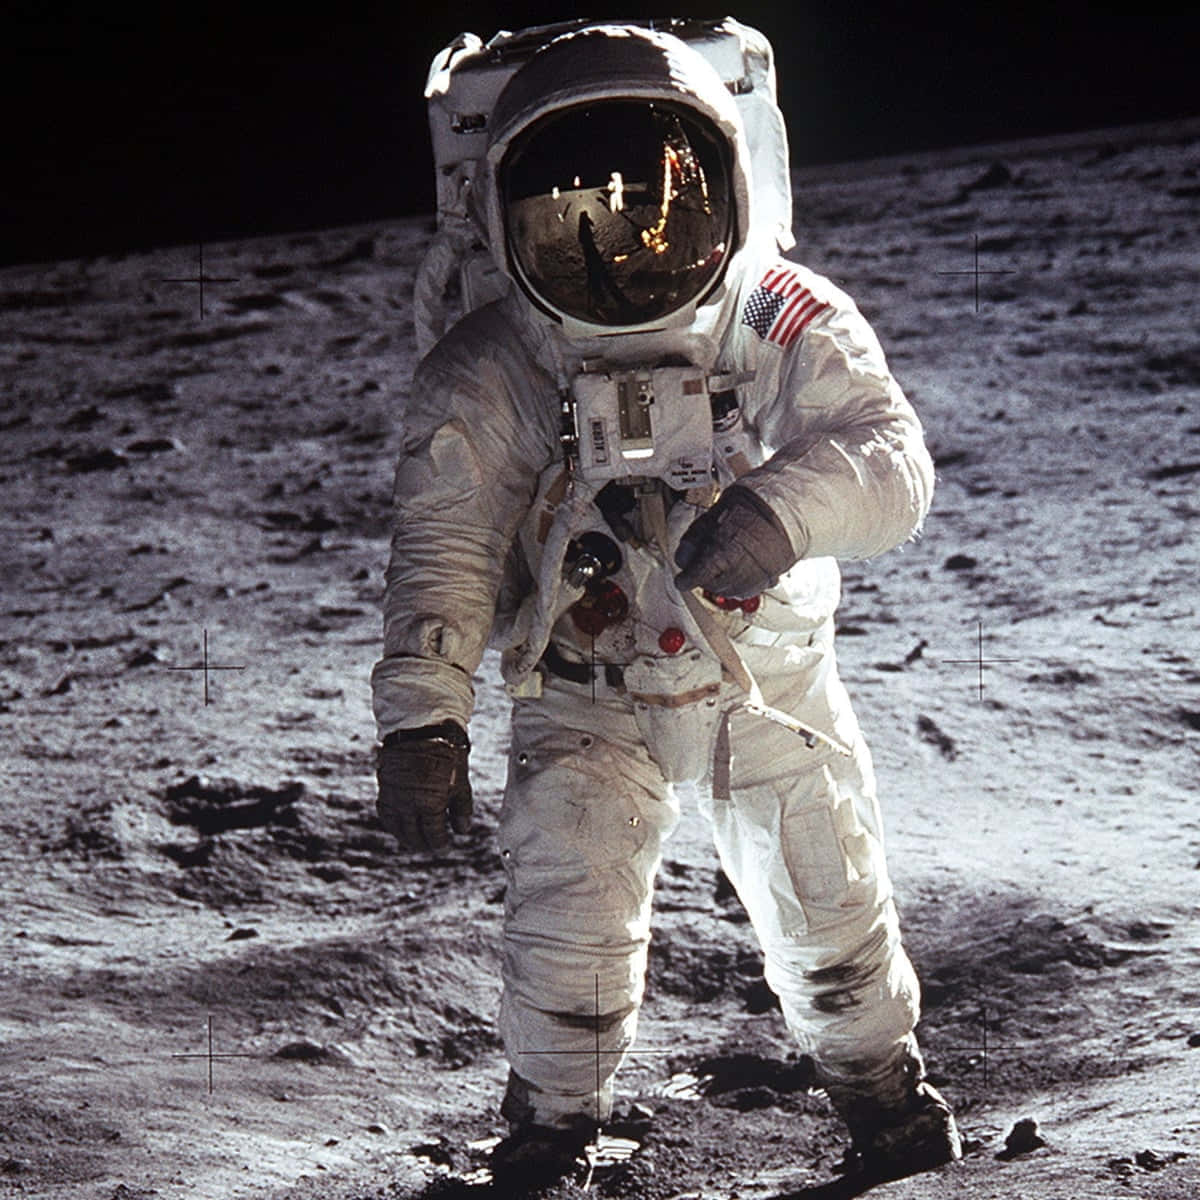 Hãy tải xuống bức ảnh Moon Landing đẹp nhất mọi thời đại để bắt đầu trải nghiệm một trong những cột mốc quan trọng nhất trong lịch sử nhân loại. Bức ảnh này thể hiện chi tiết chân thực về lần đáp xuống mặt trăng đầu tiên của con người. Hãy cùng xem và chia sẻ niềm tự hào về sự thành công này!